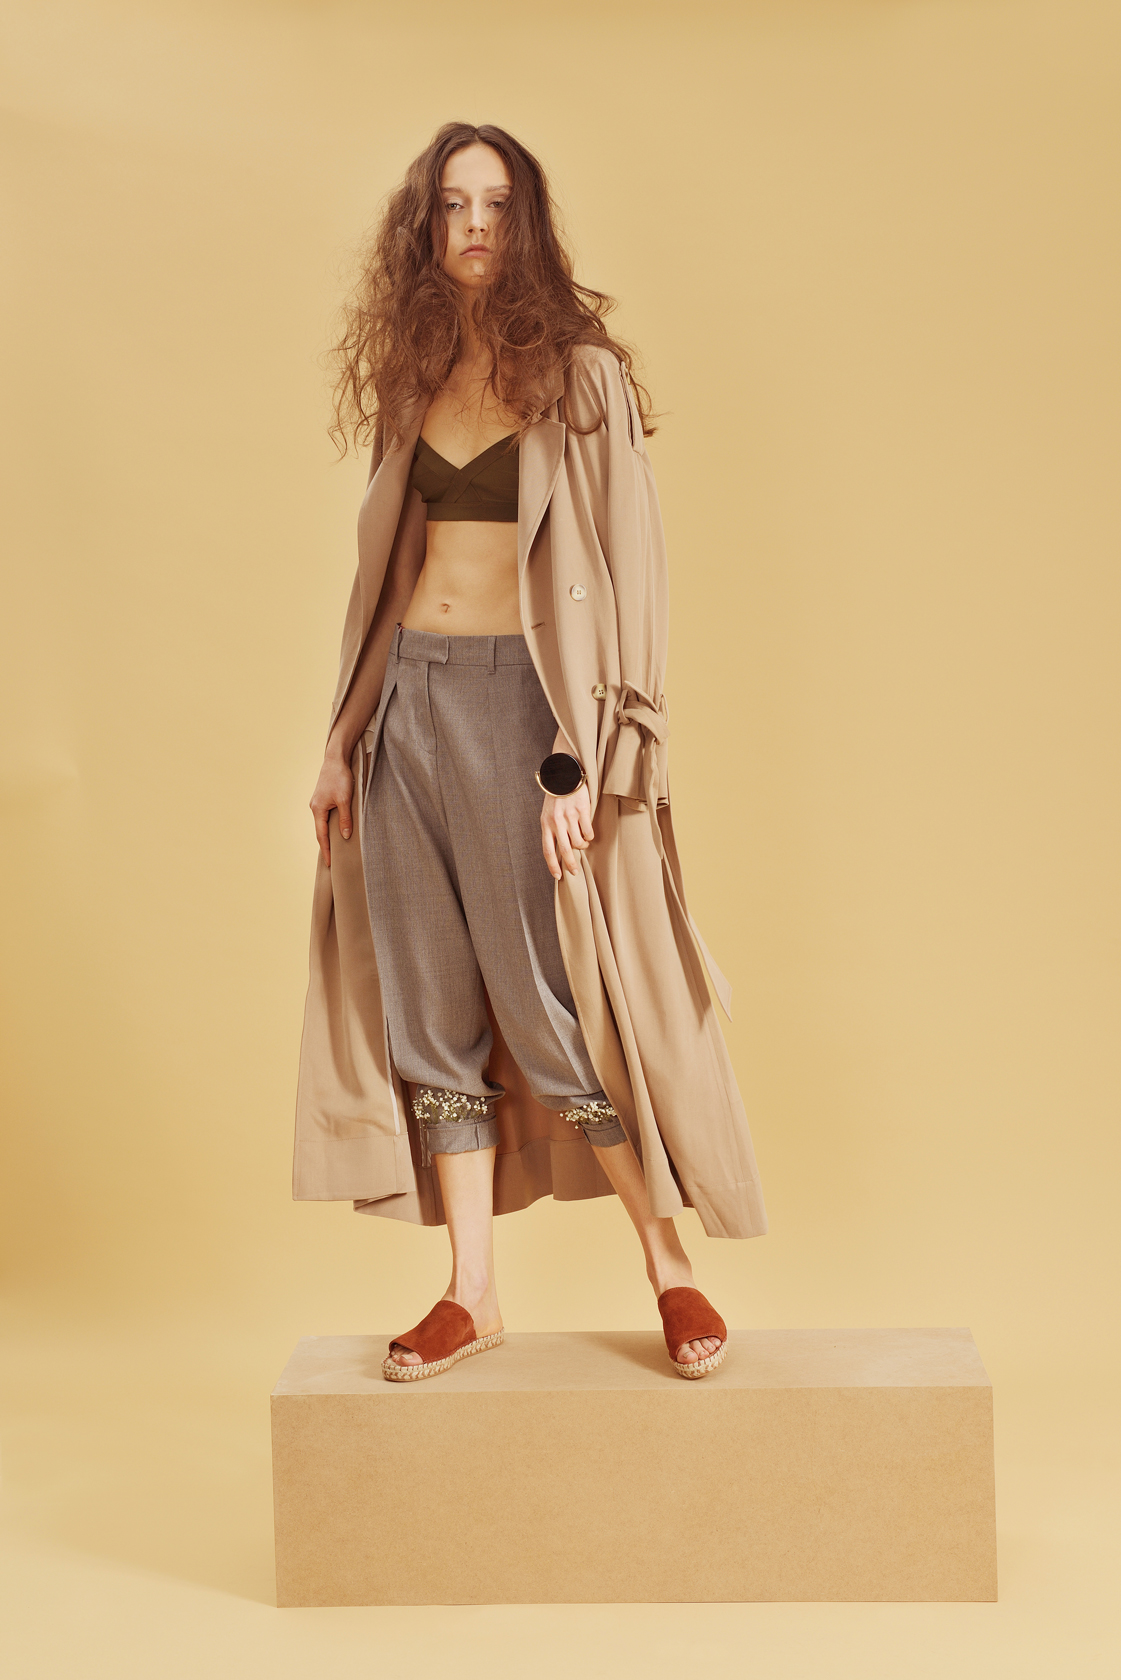 панталон Max Mara, бански, тренч и обувки H&M, гривна Marni от Plus Zero Concept Store